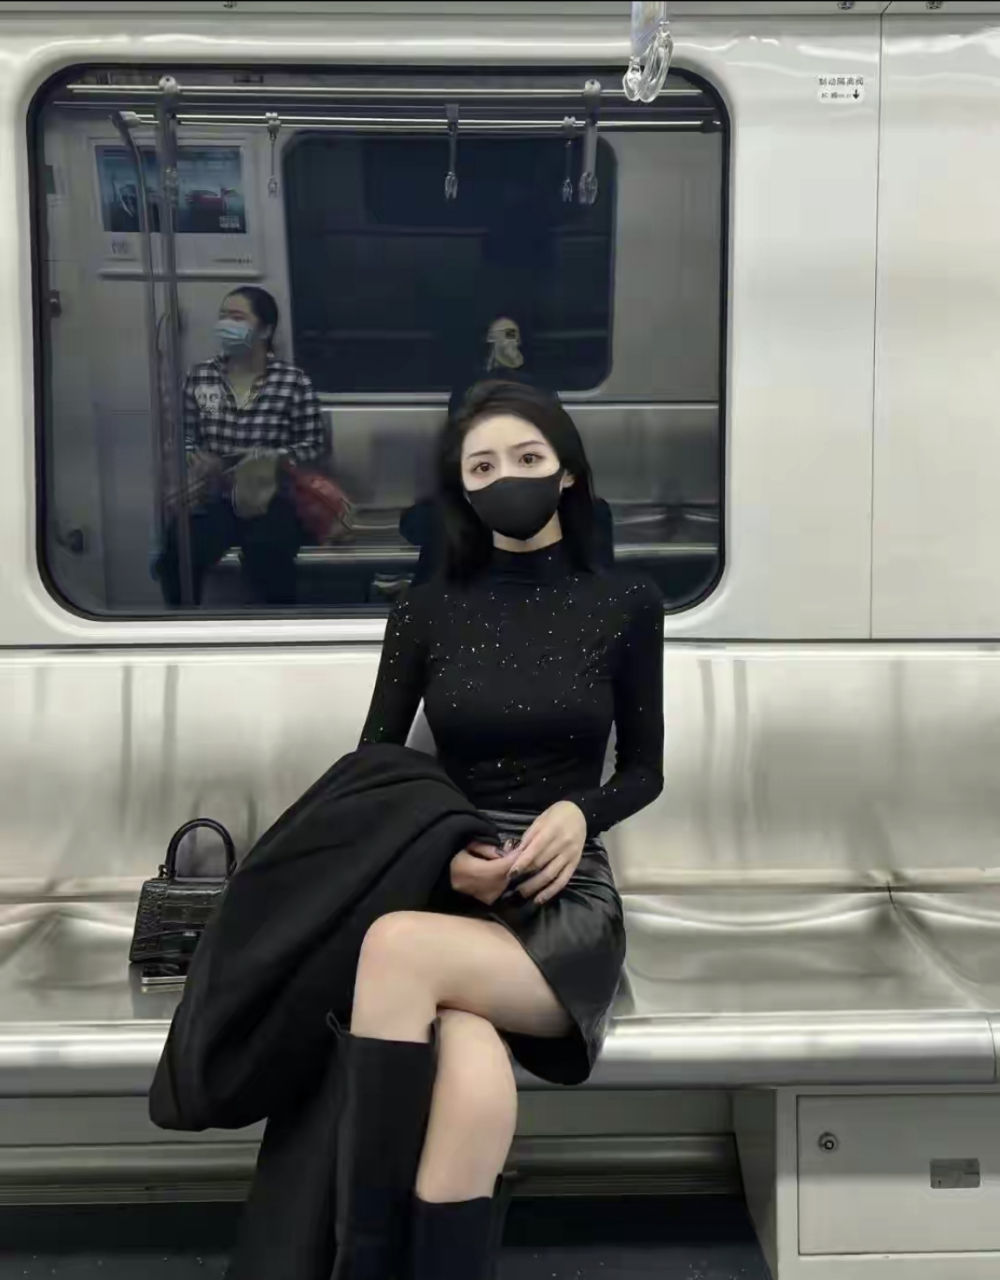 网友:地铁女神,果然黑色系气场很强大,你们觉得如何?